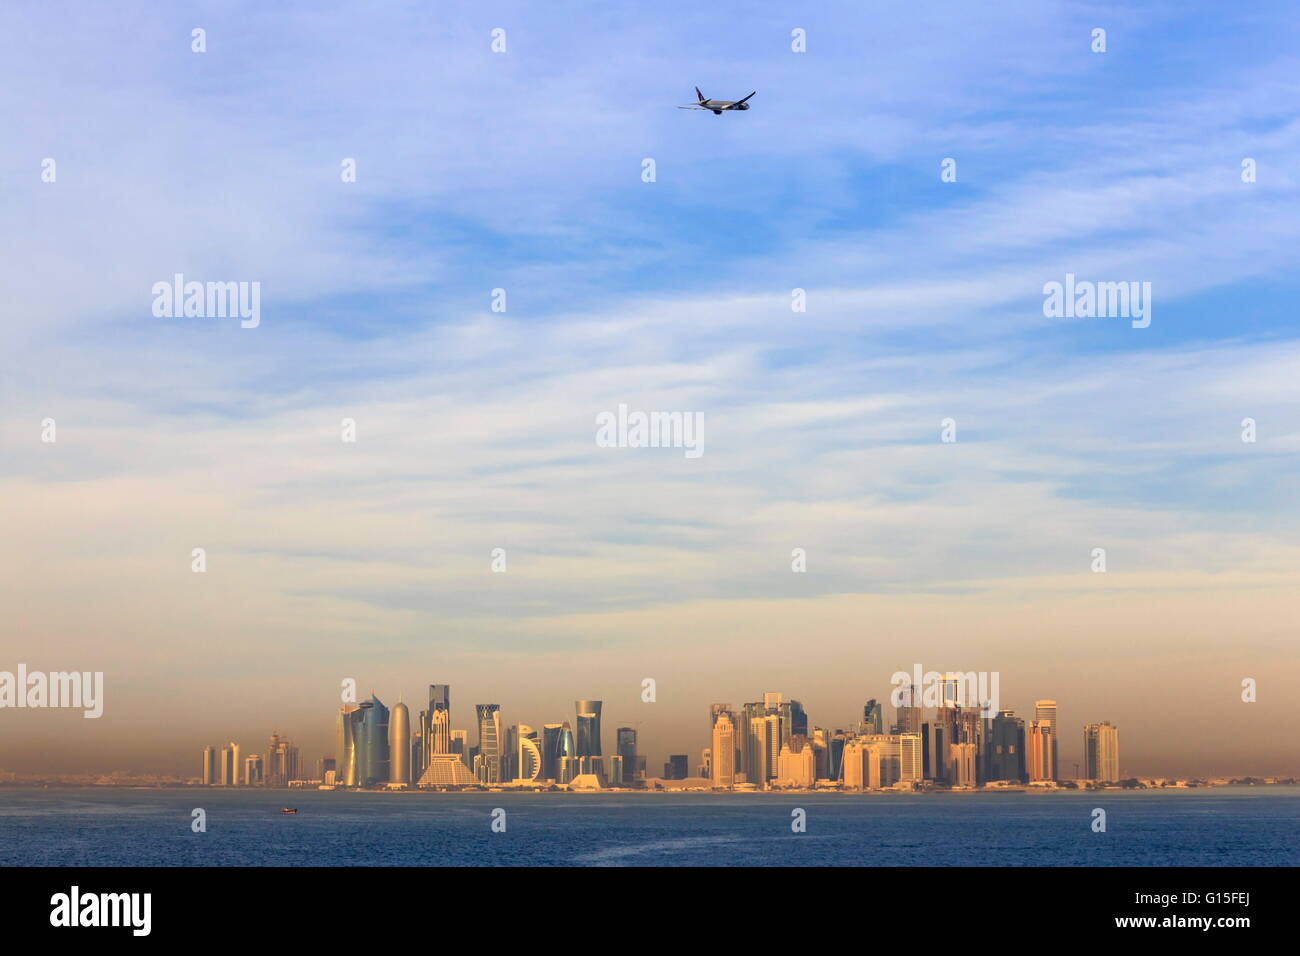 Avion à réaction après son décollage de l'Aéroport International Hamad, vu au-dessus de la ville de Doha, Qatar, mer Moyen Orient Banque D'Images